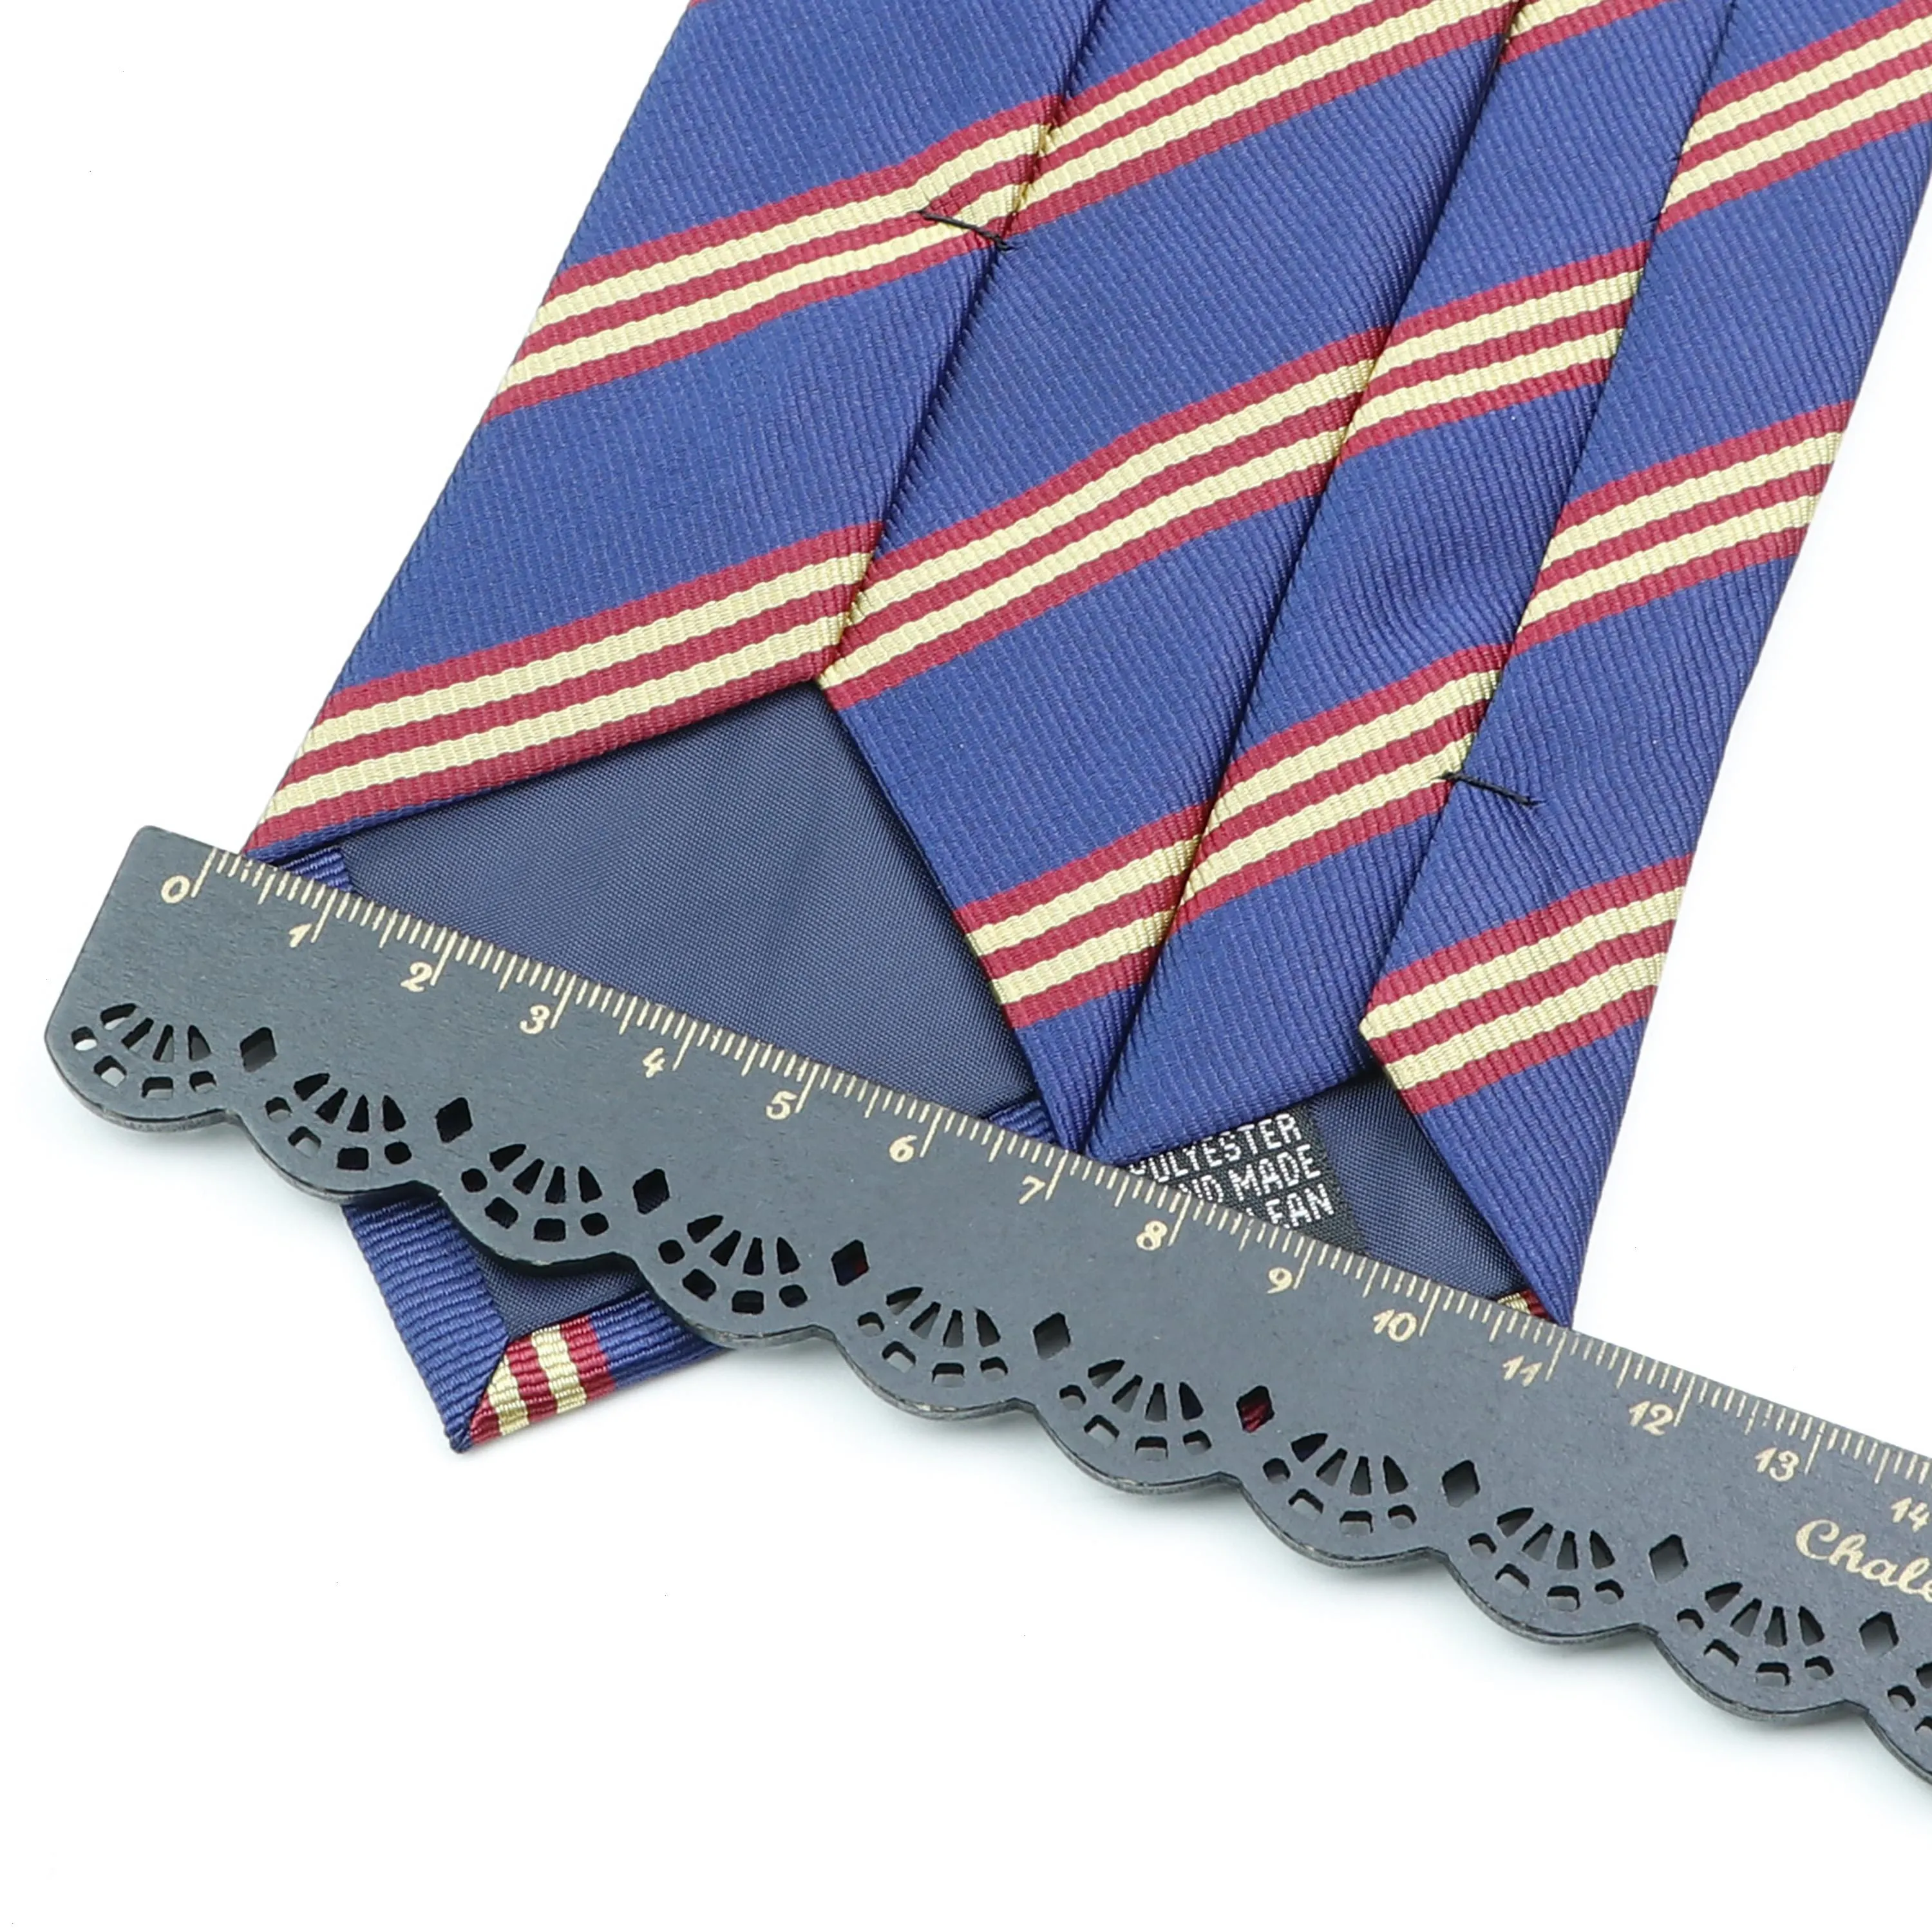 Mens Tie klasik şerit 7cm jakard kırmızı mavi yeşil kravat günlük giyim cravat düğün elbise aksesuarları insan için